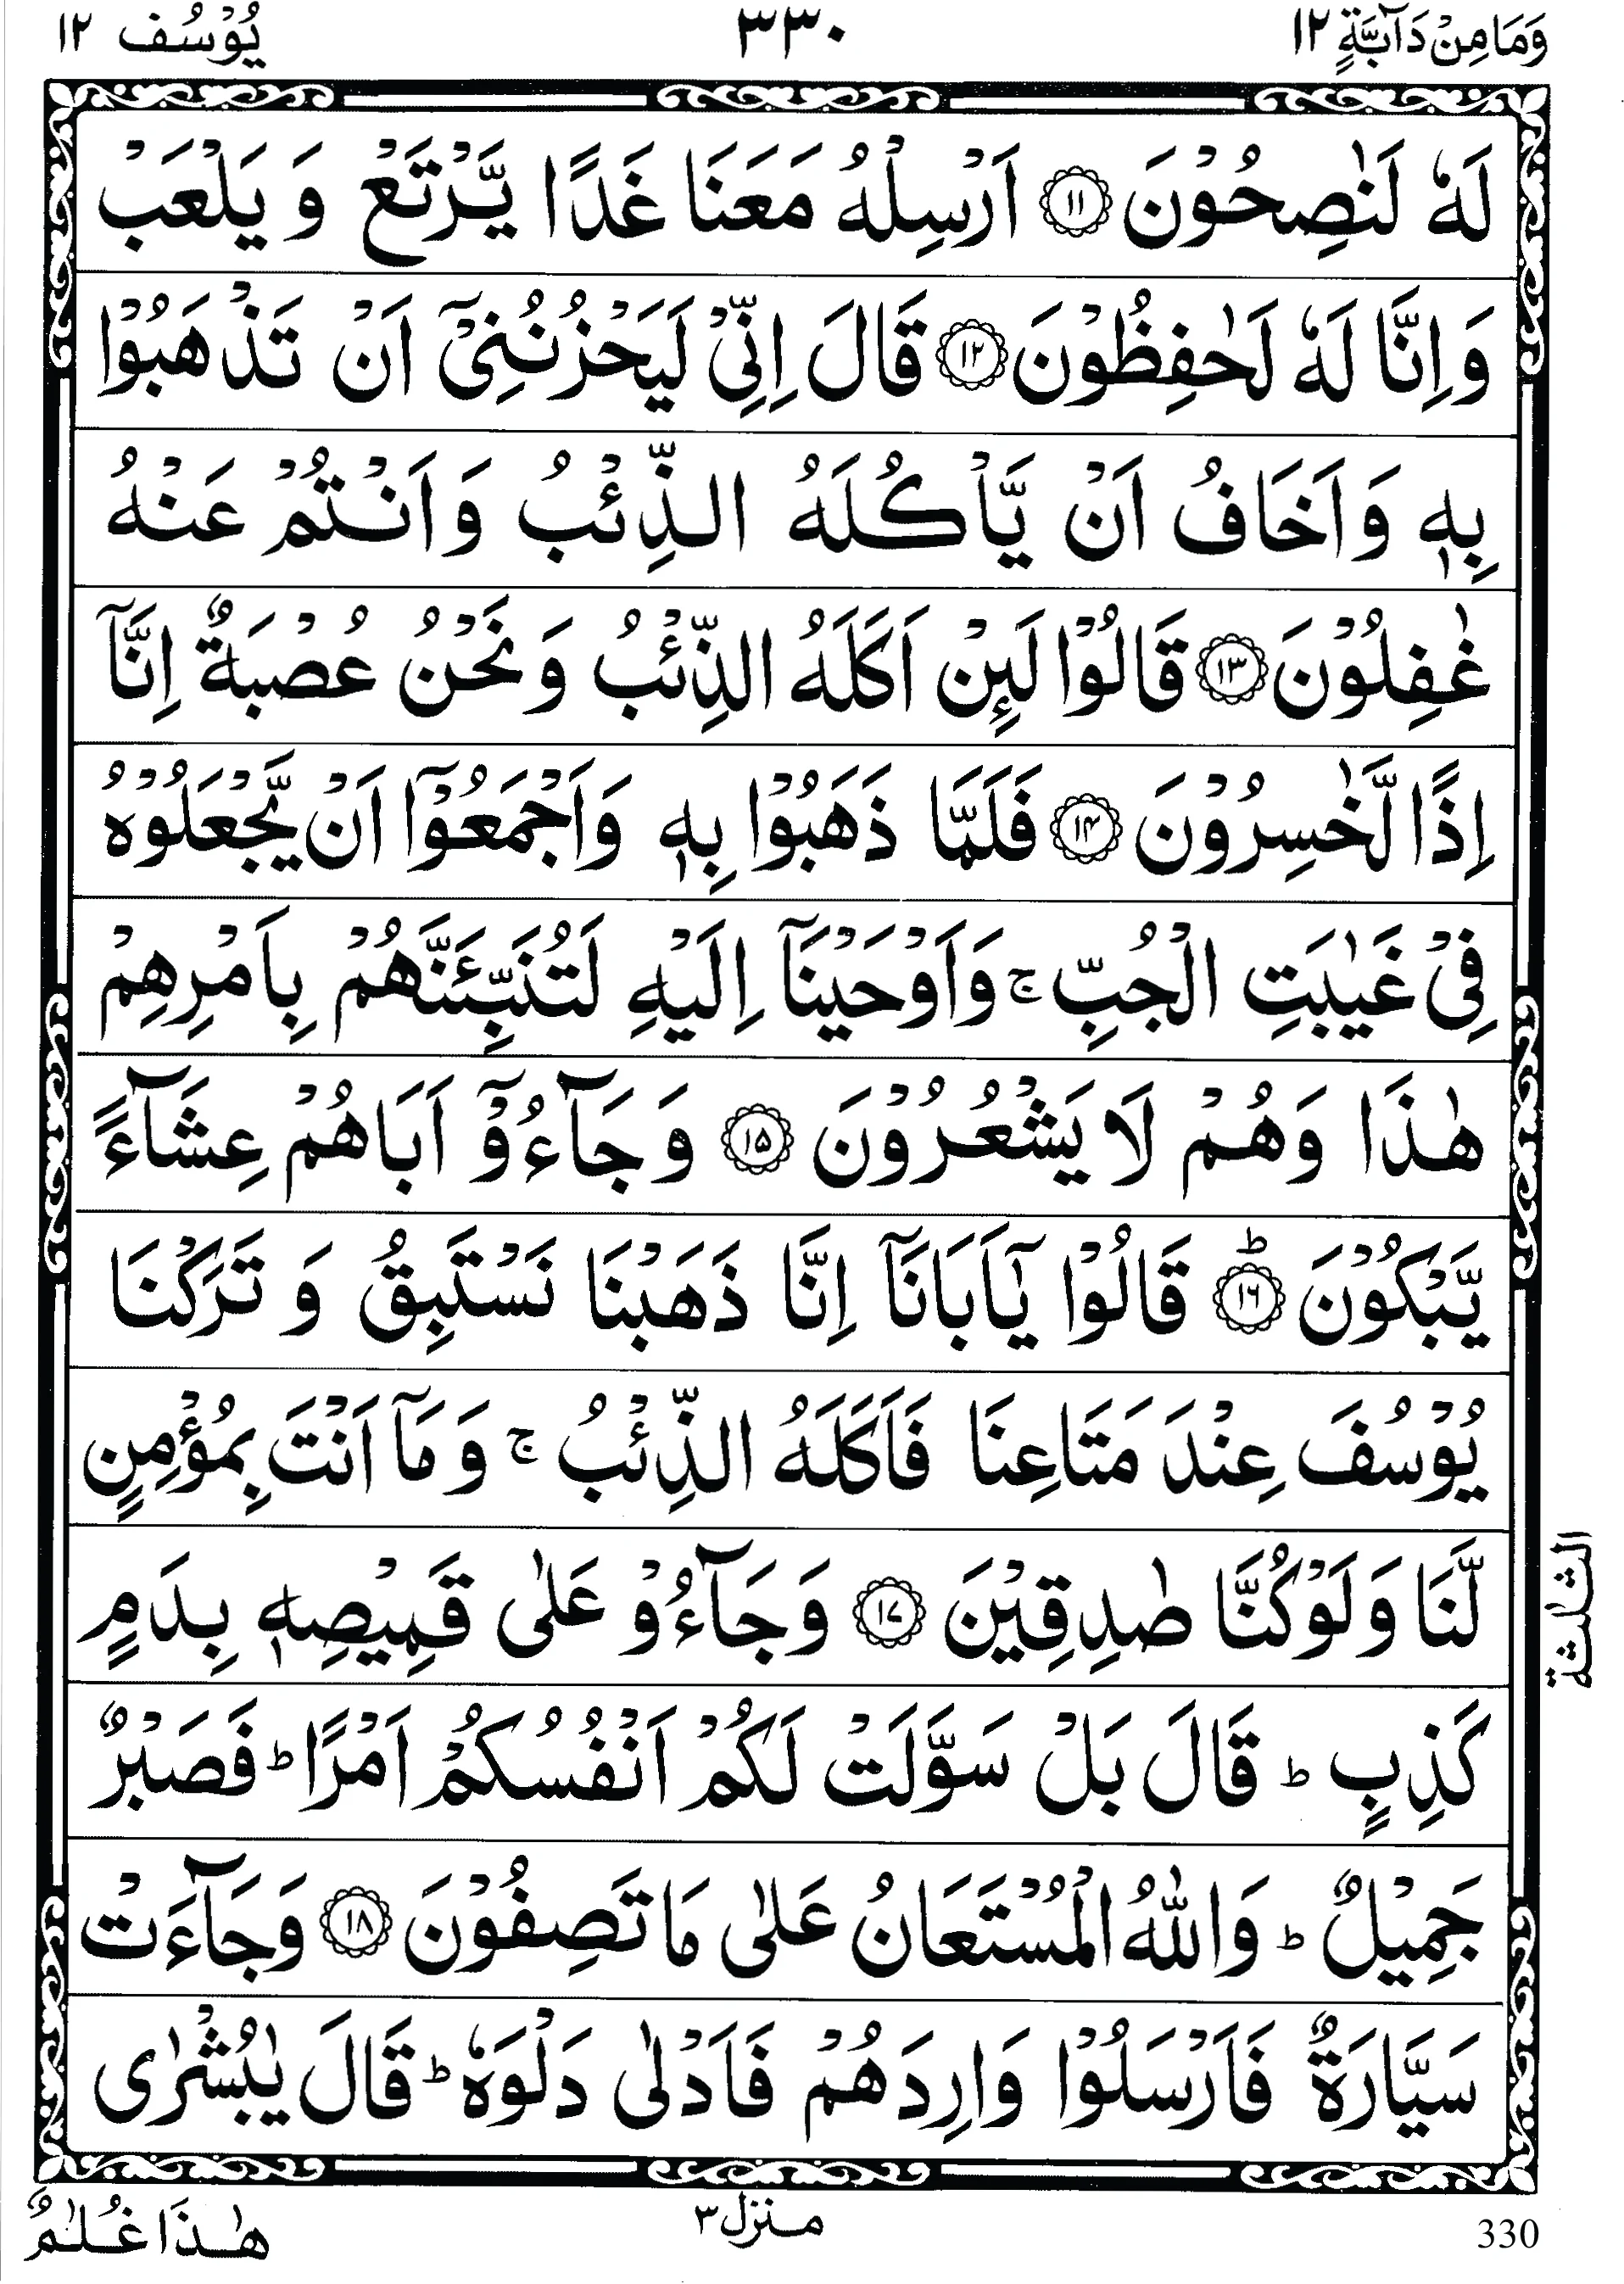 Quran para 12 | Quran para 12 Wa Mamin Da’abat | Para Wa Mamin Da’abat | Quran sipara 12 | Para 12 | 12th Para Recite Online and PDF | Quran Wazaif